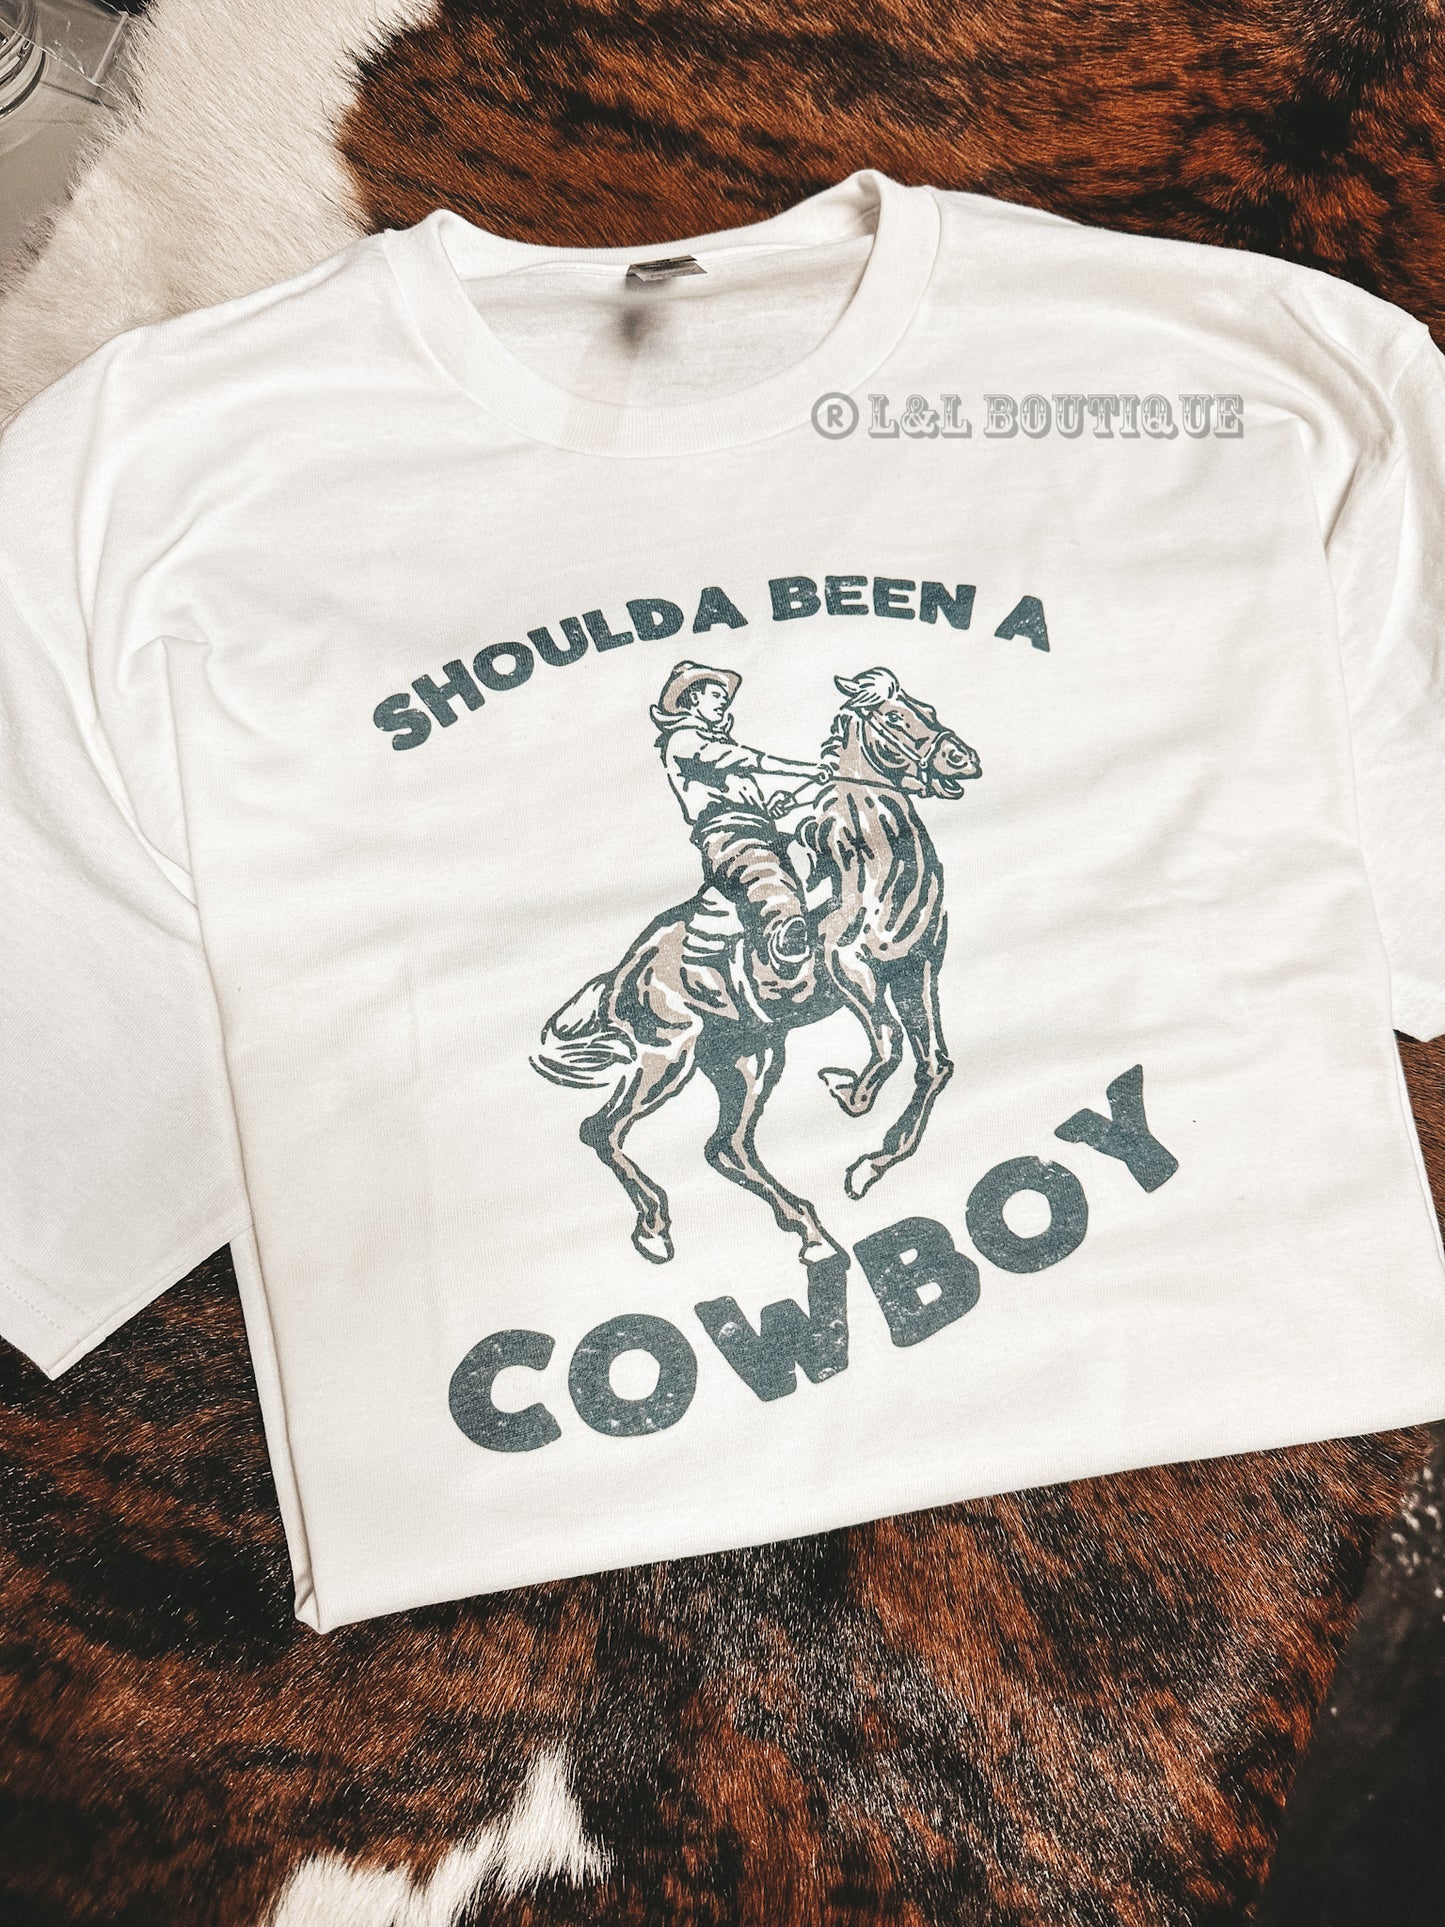 Shoulda Been a Cowboy Tshirt